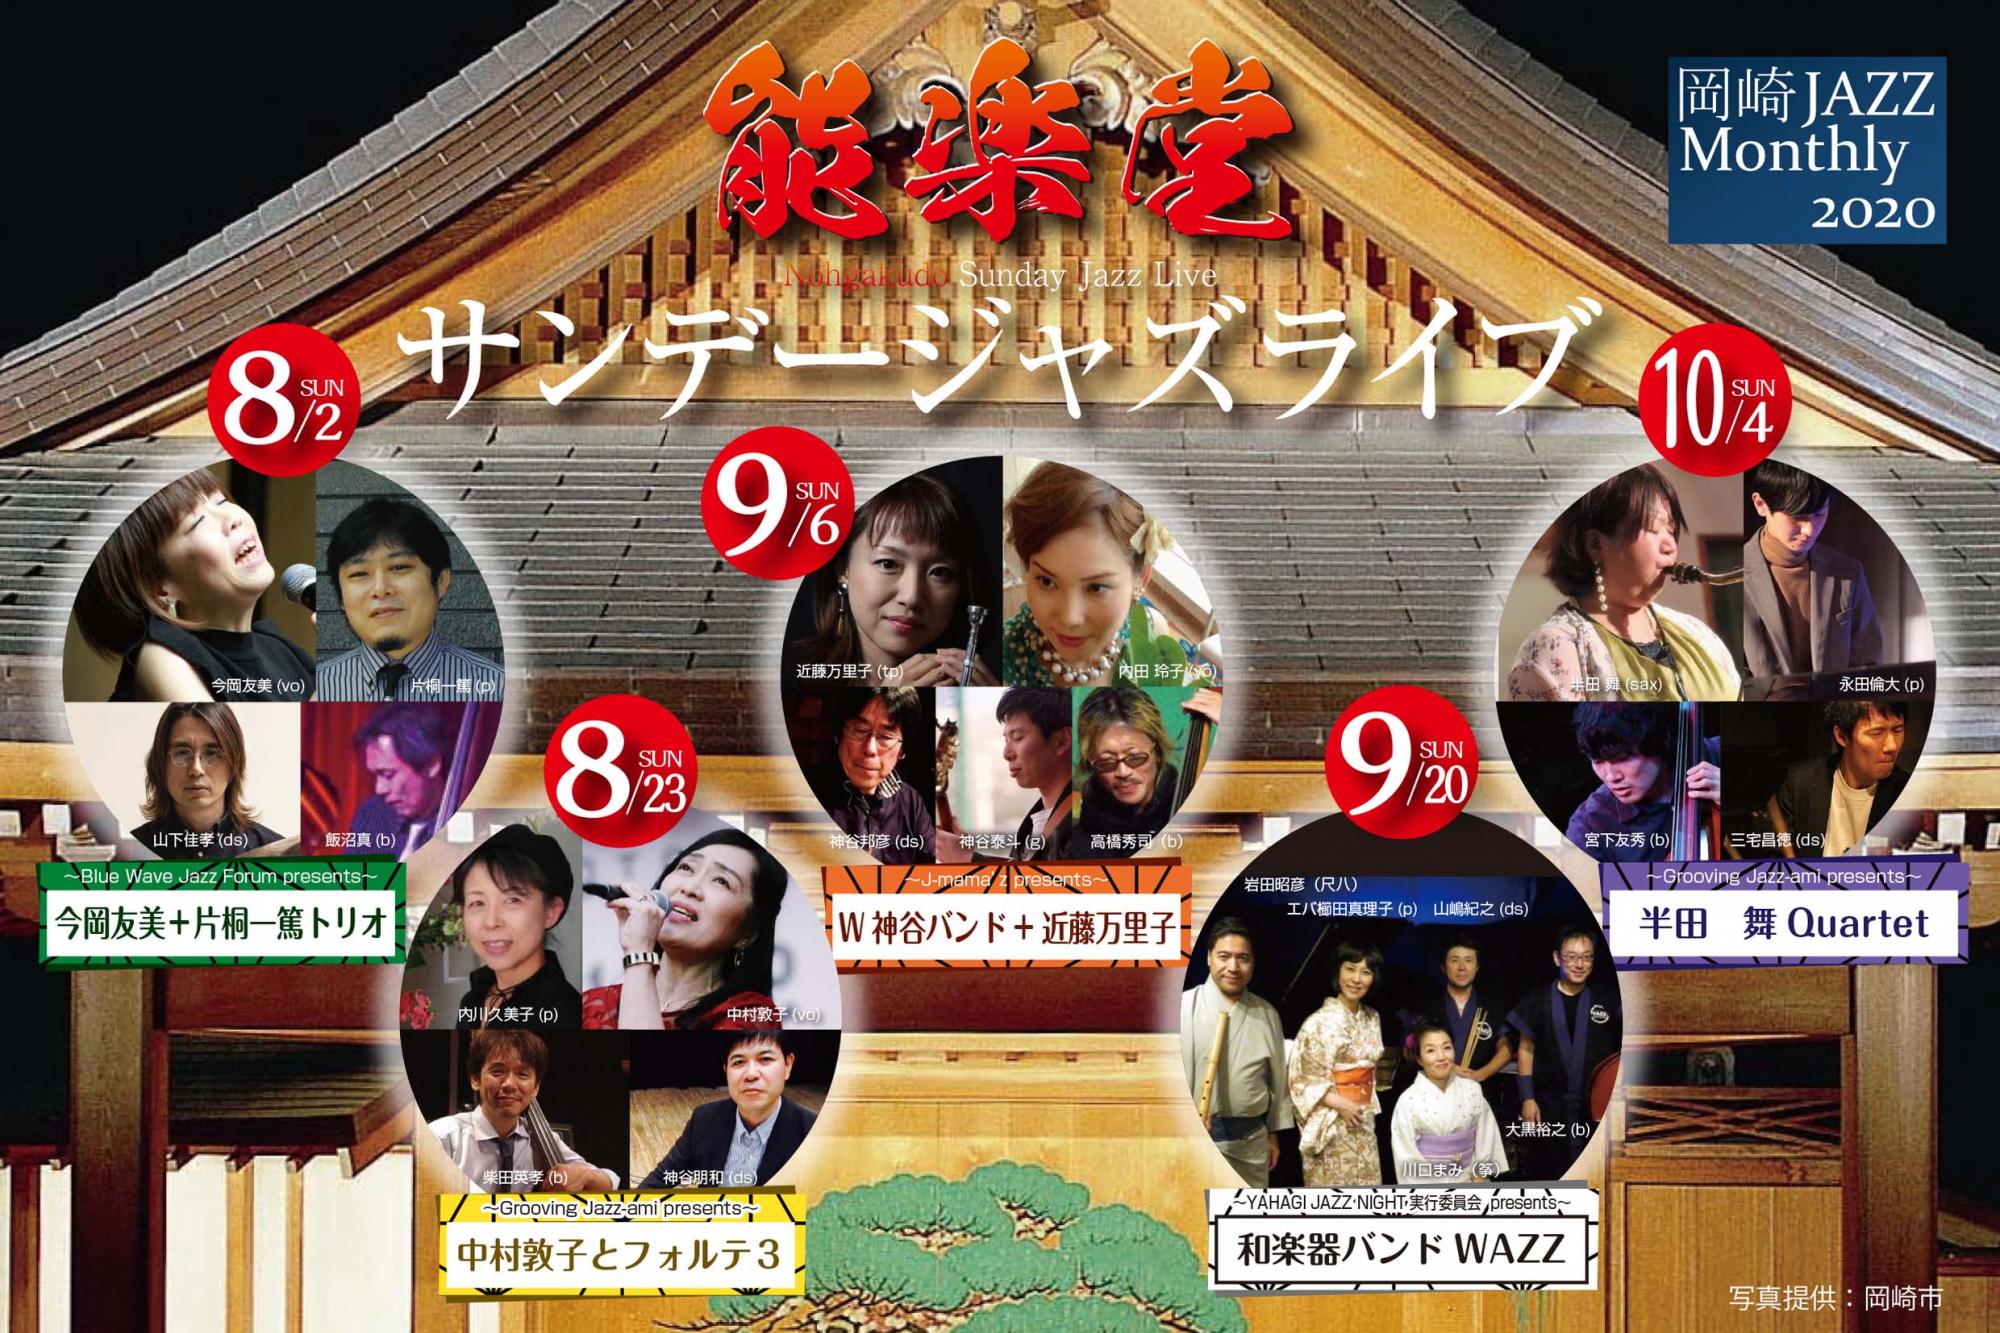 「能楽堂サンデージャズライブ」※8月23日（日）の開催は、「中止」になります。